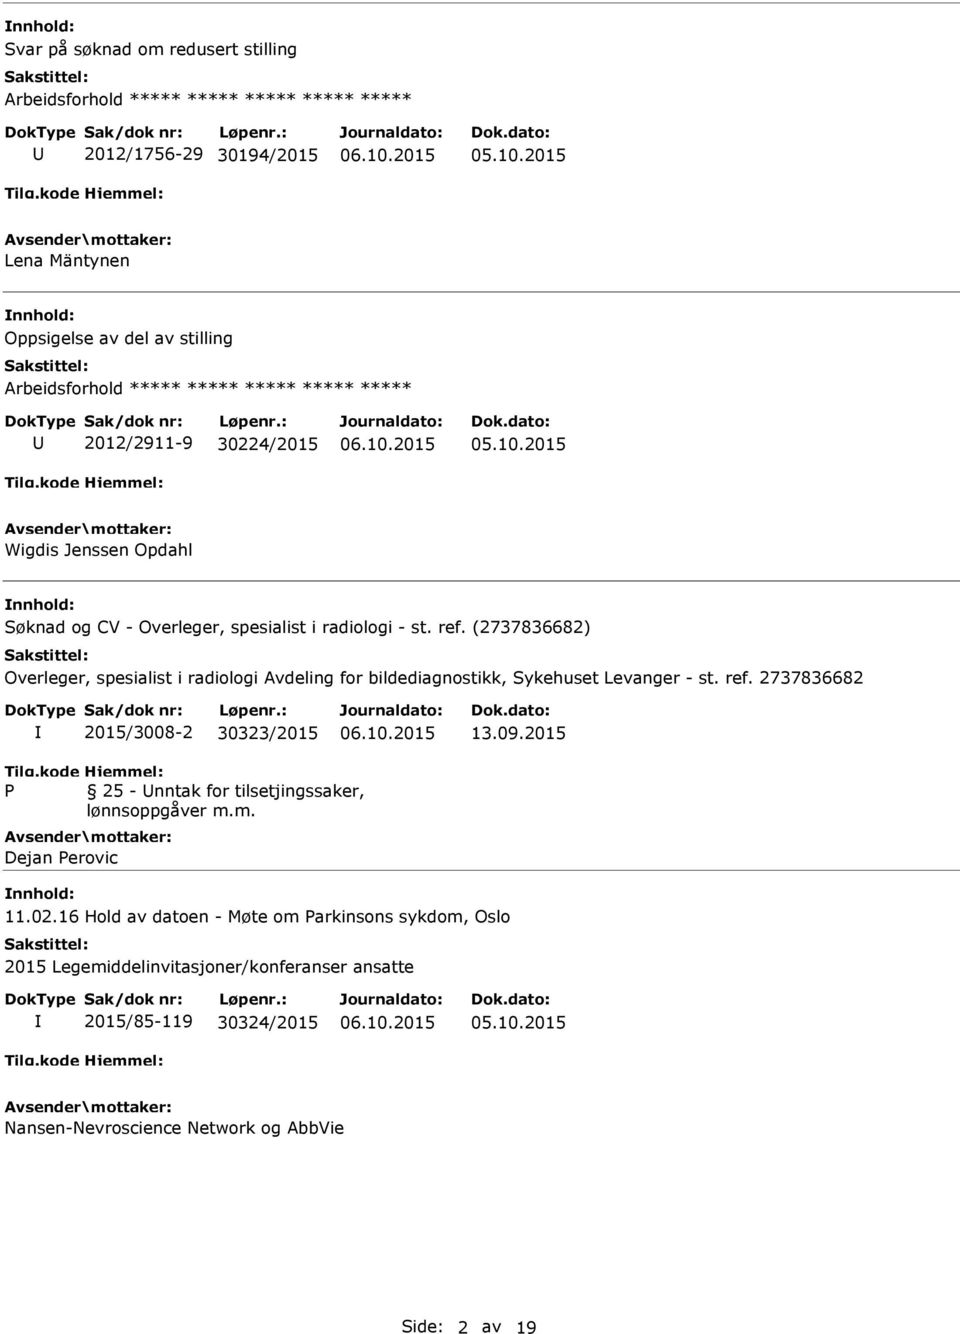 (2737836682) Overleger, spesialist i radiologi Avdeling for bildediagnostikk, Sykehuset Levanger - st. ref. 2737836682 2015/3008-2 30323/2015 13.09.